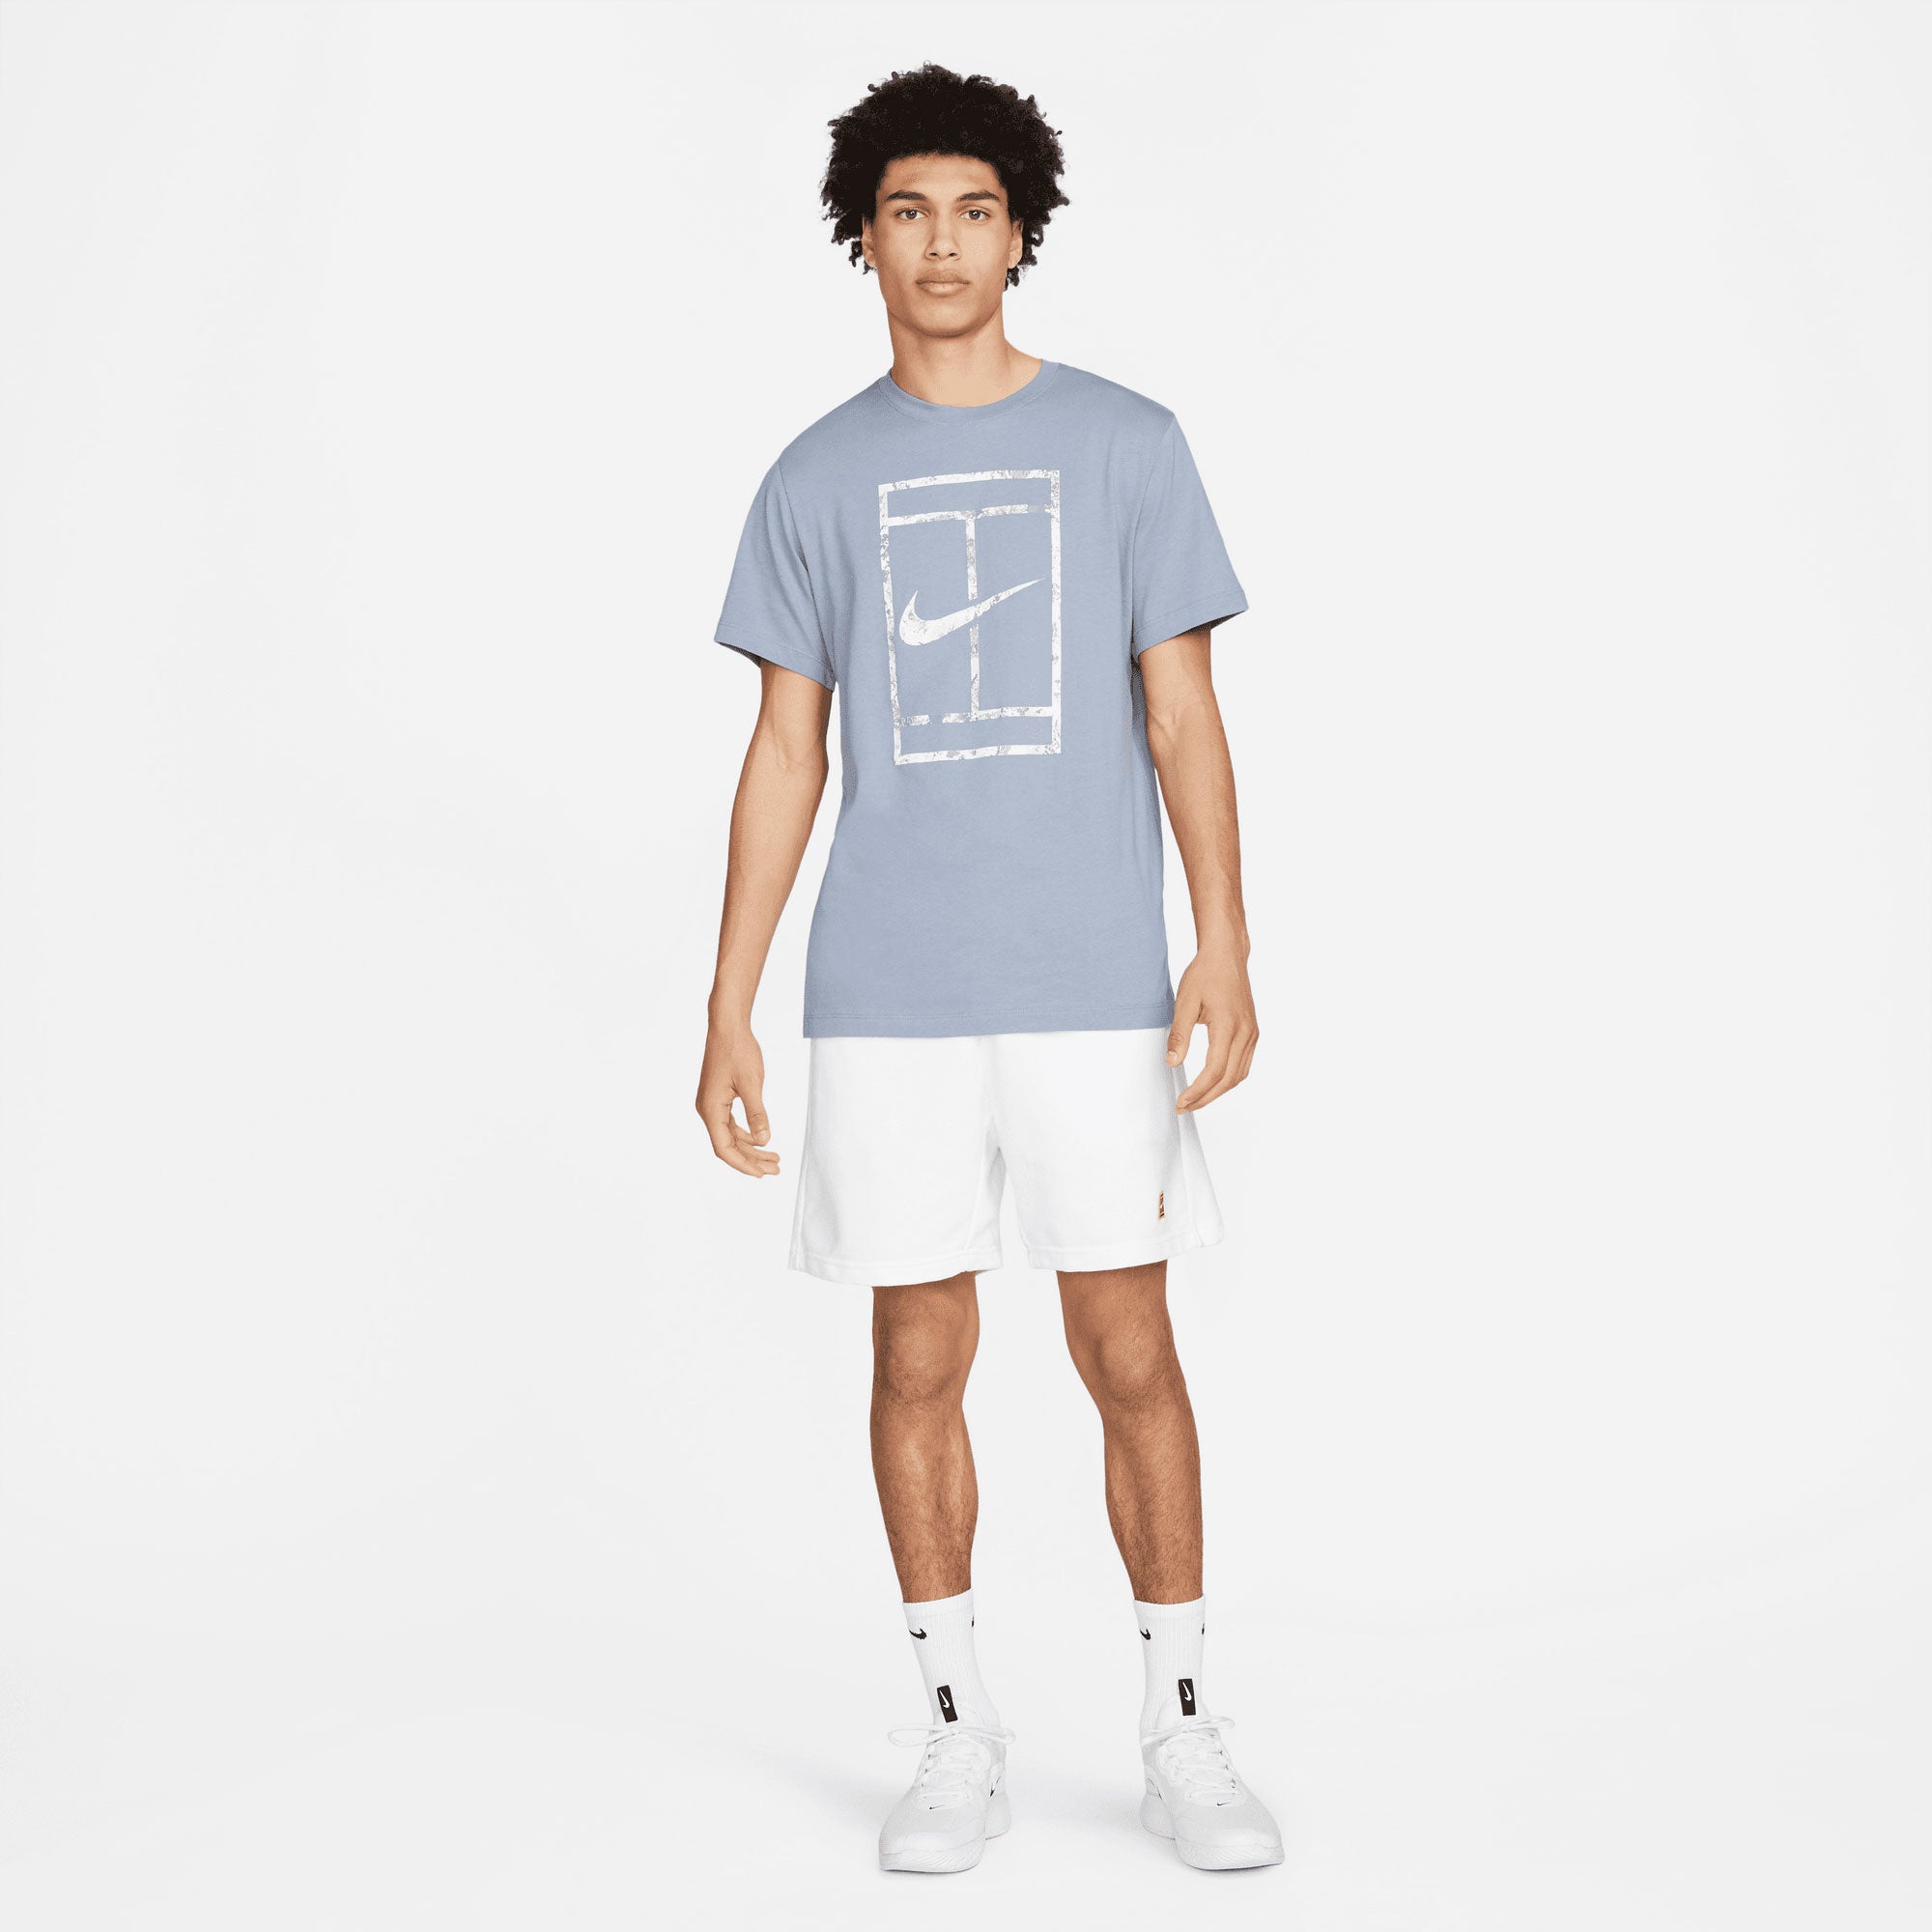 NikeCourt Garden Party Men's Tennis T-Shirt Blue (4)